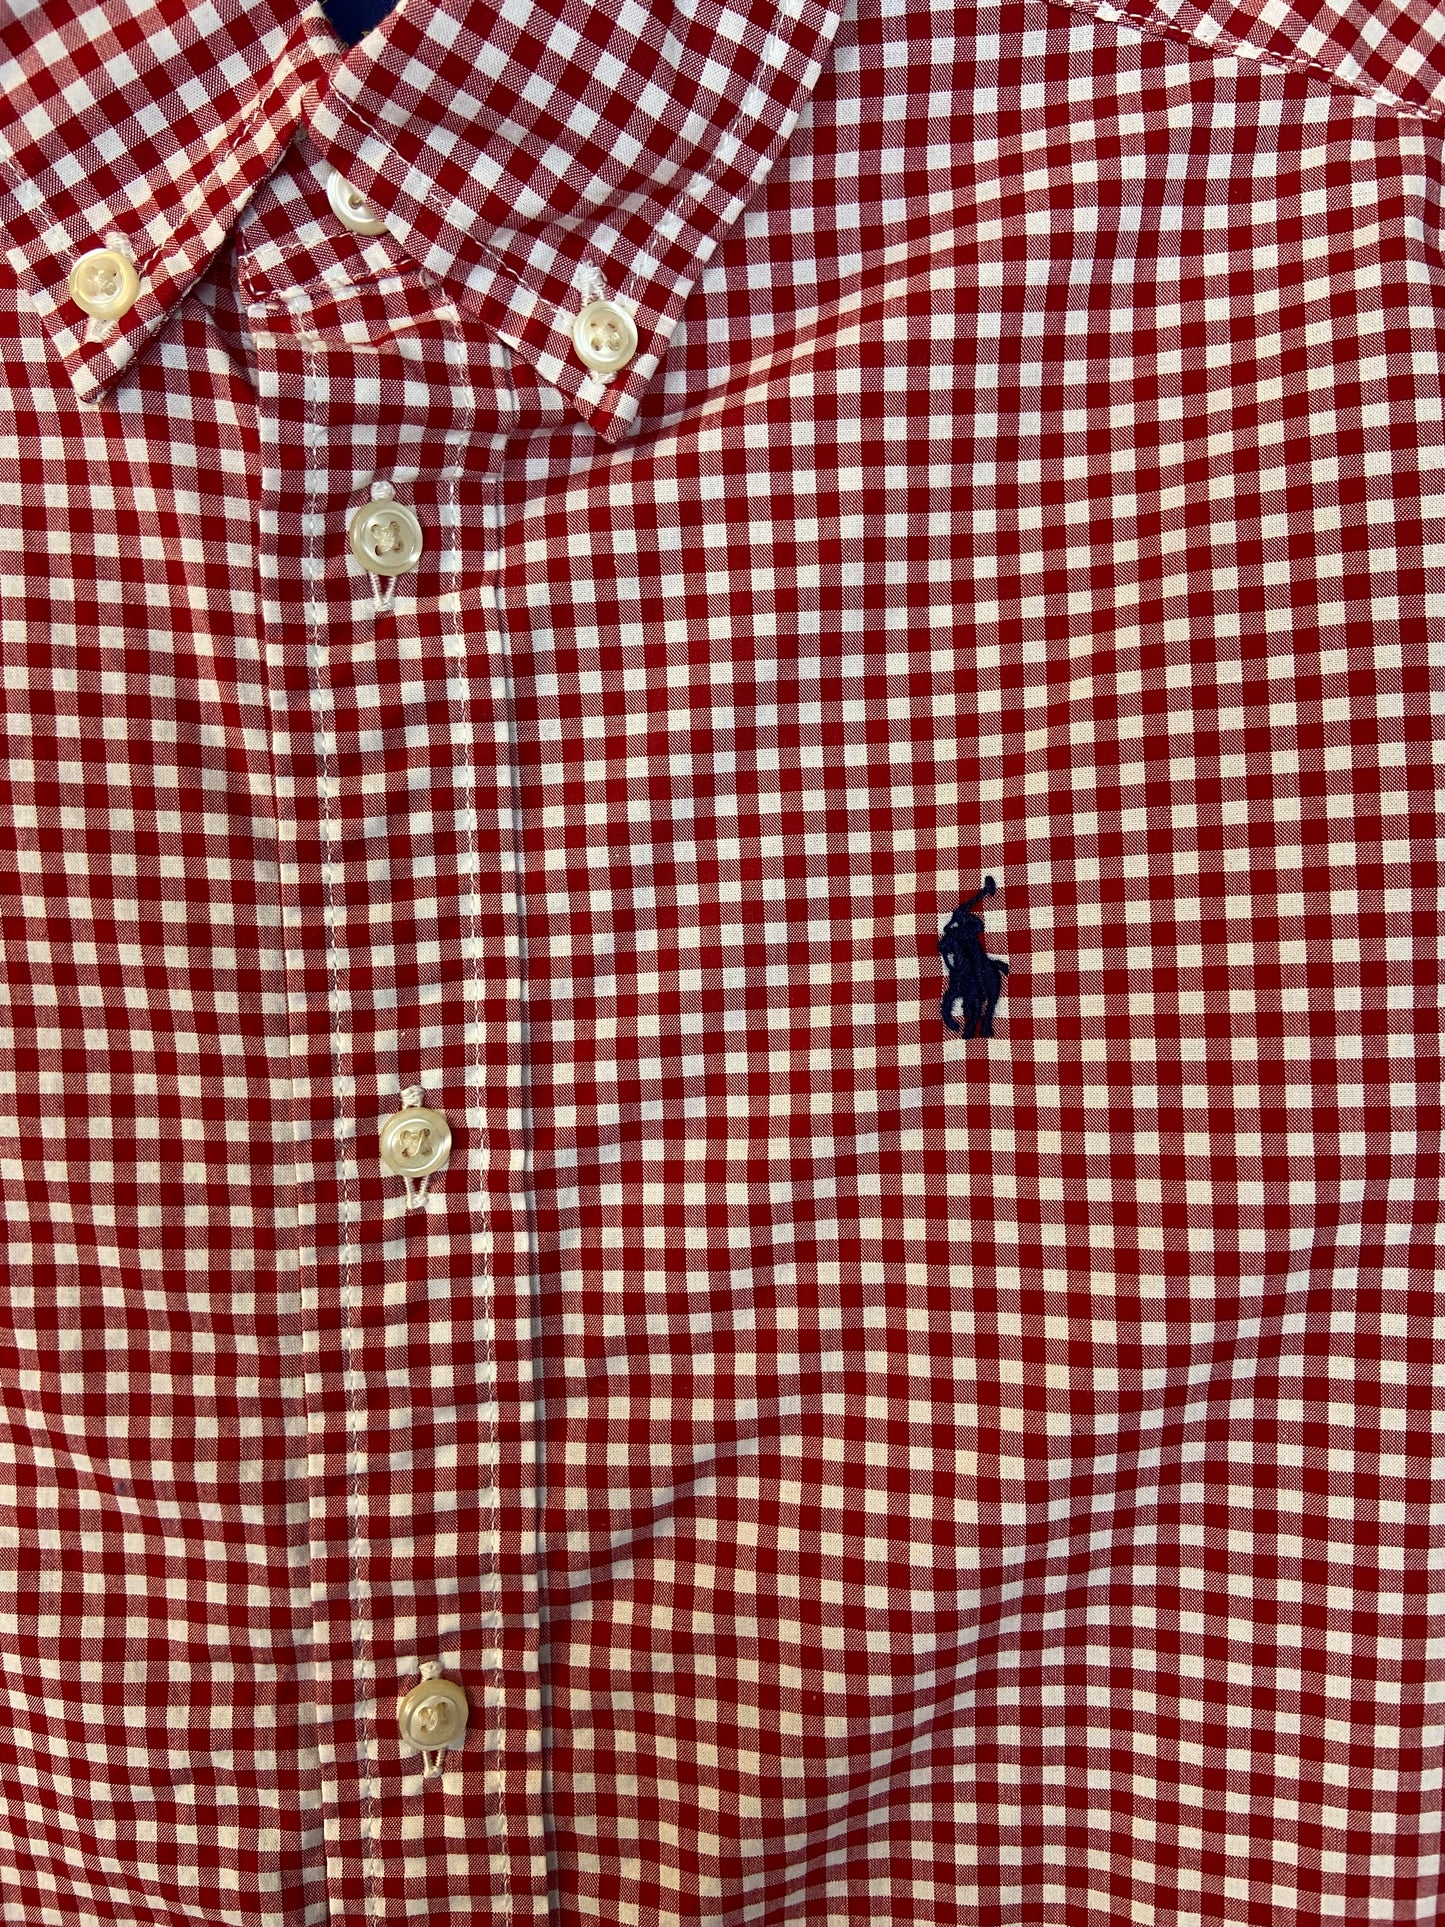 Ralph Lauren Size 7 Red Checkered Long-Sleeved Shirt